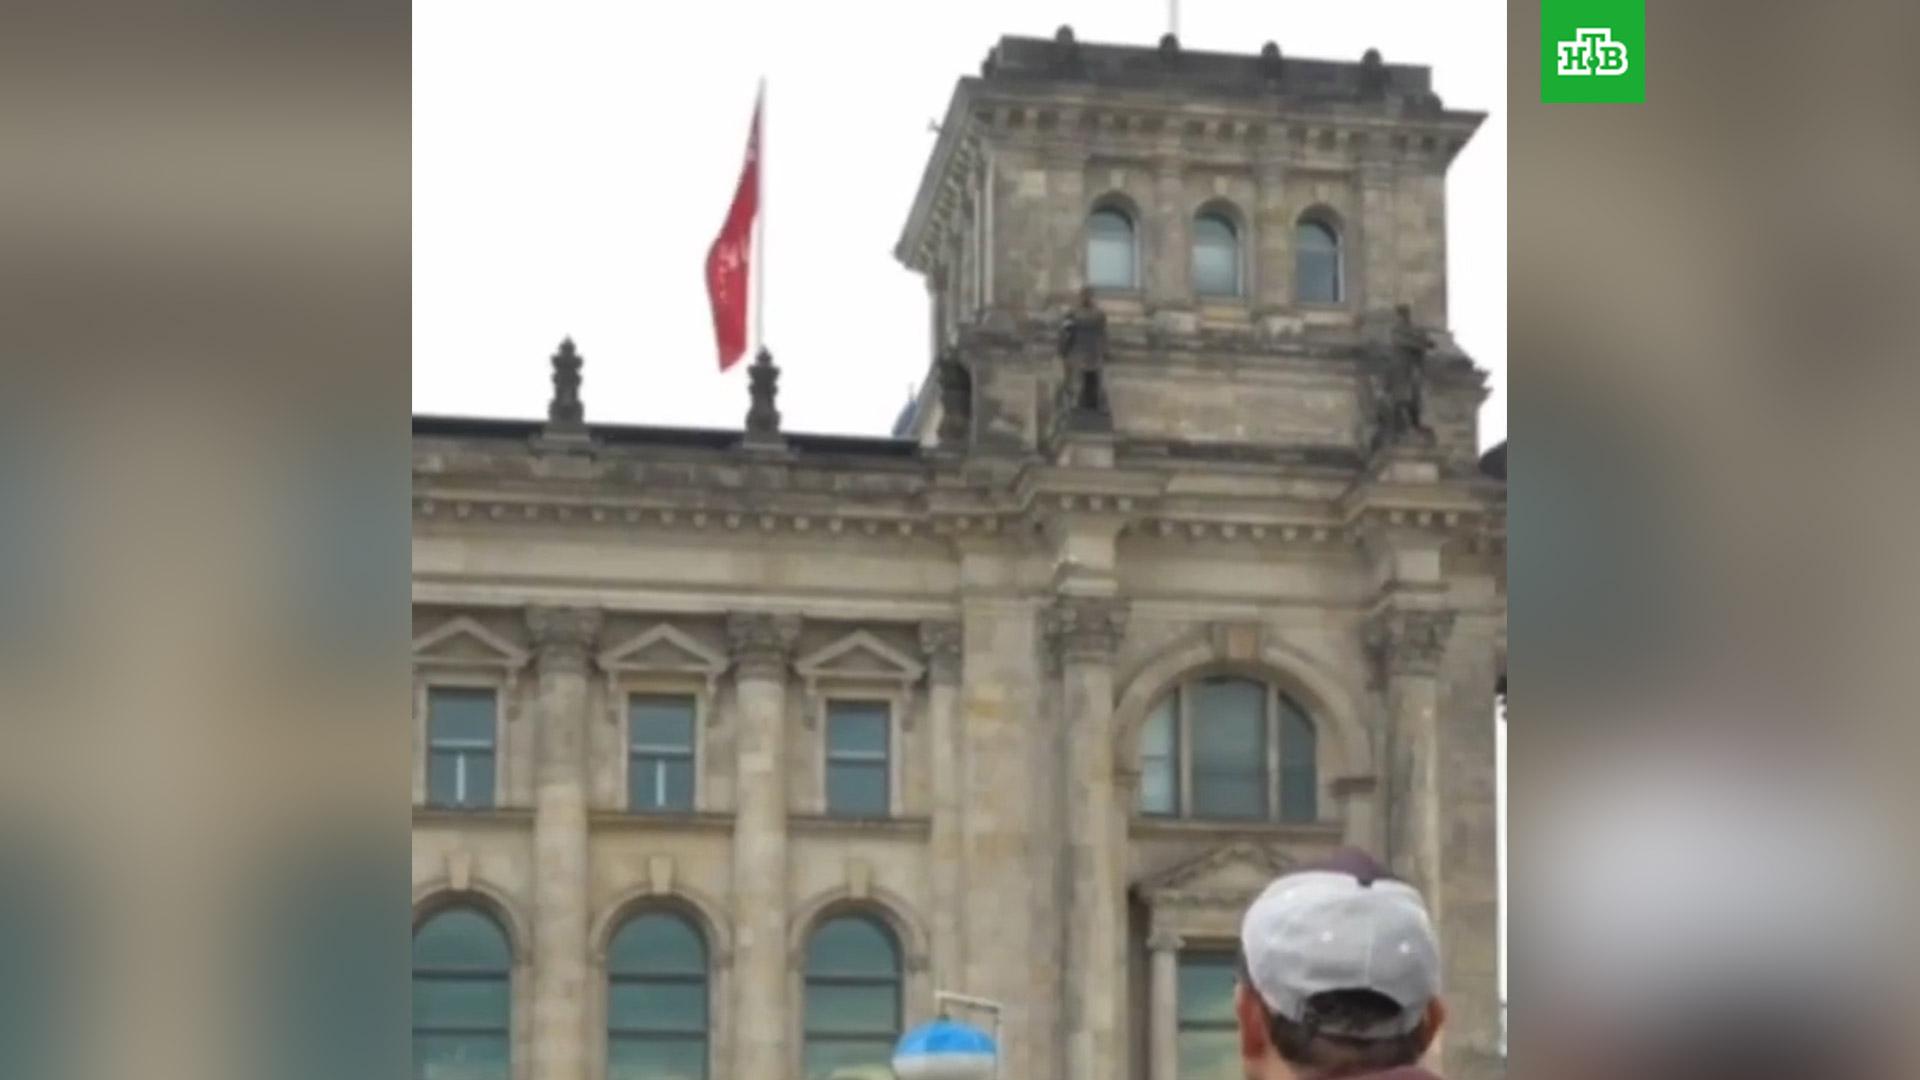 водружение флага в берлине